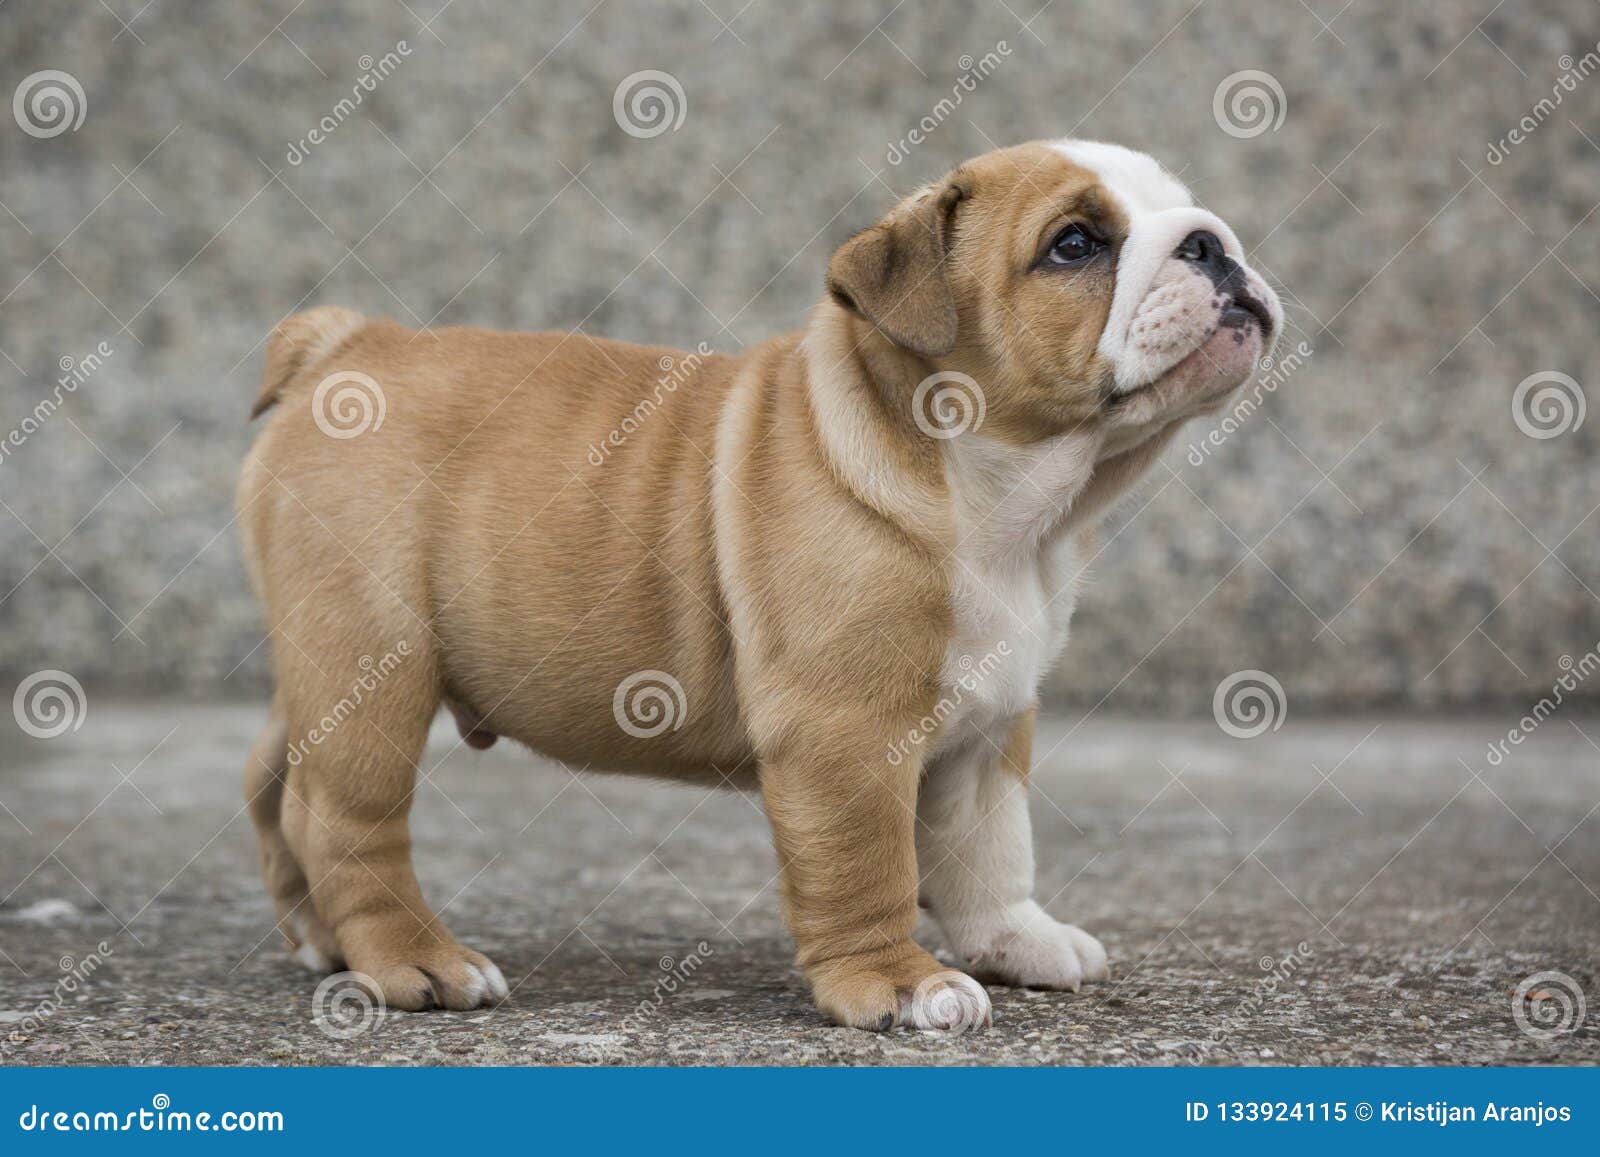 Bulldog Puppies Cute